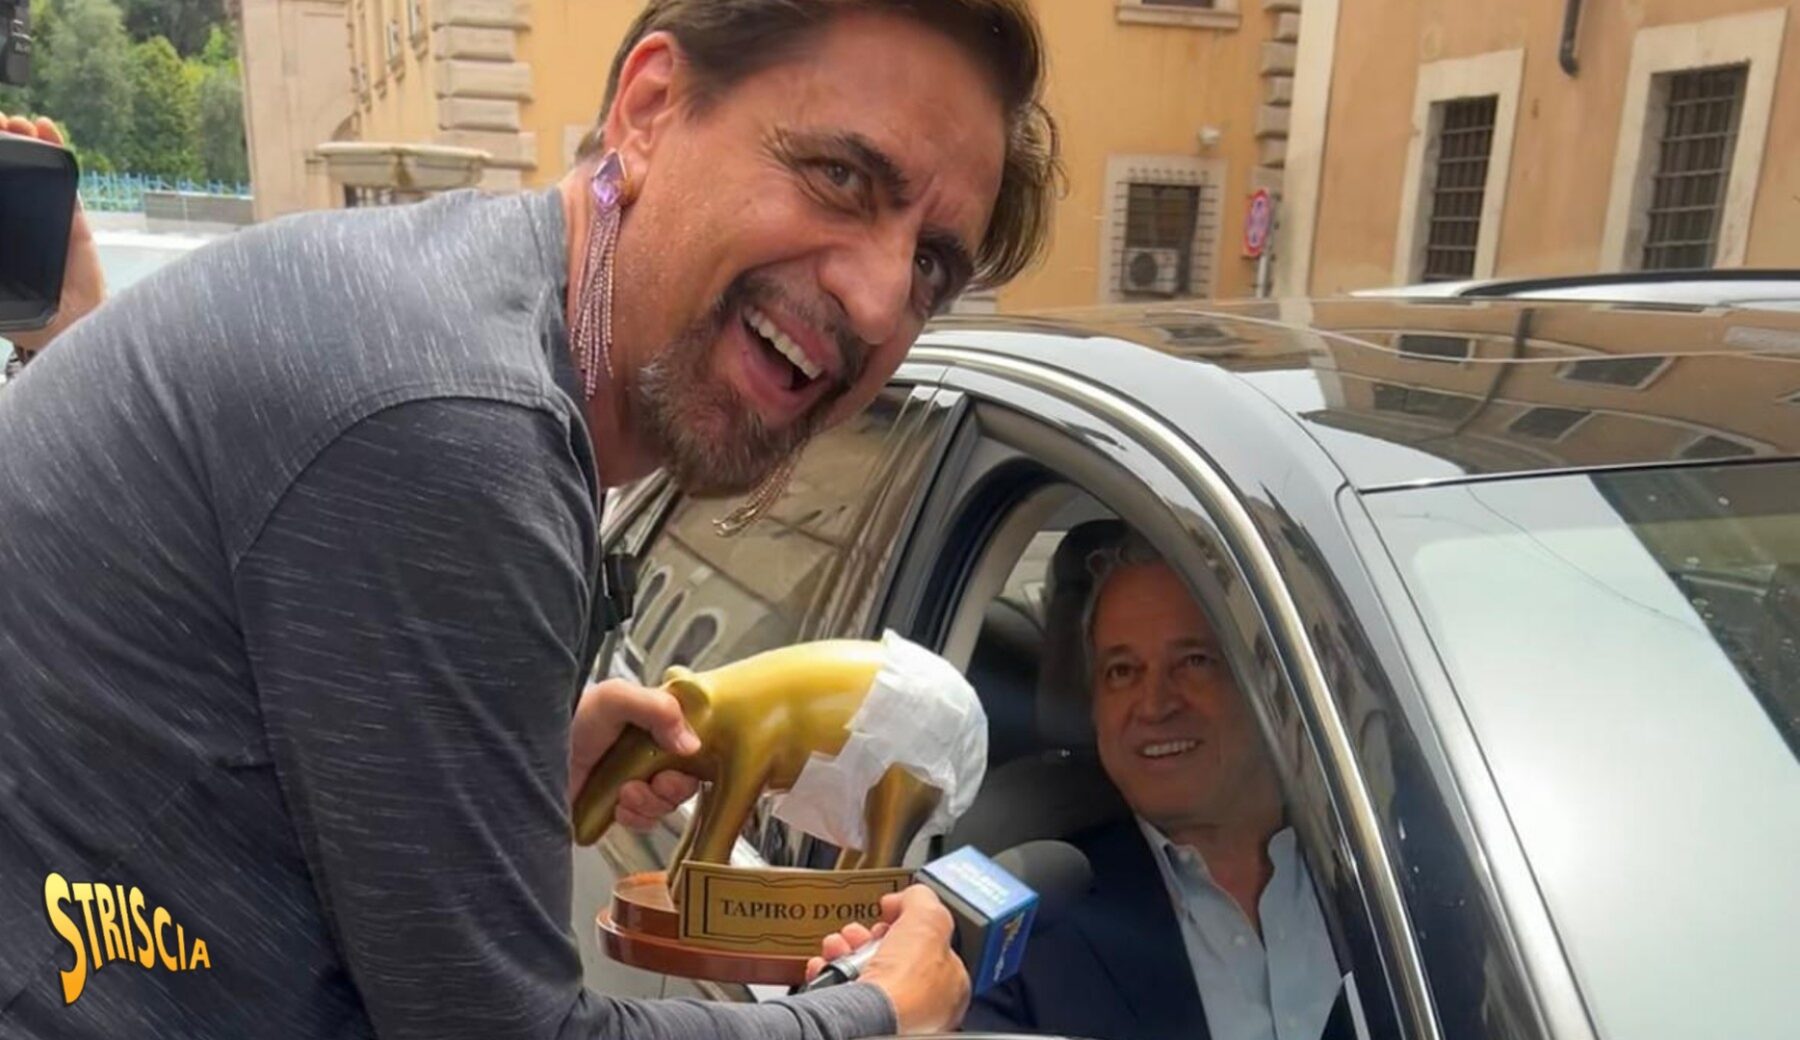 Stasera a Striscia, Tapiro d’oro col pannolone a Enrico Mentana: «Come farei le maratone tv se fossi incontinente?»